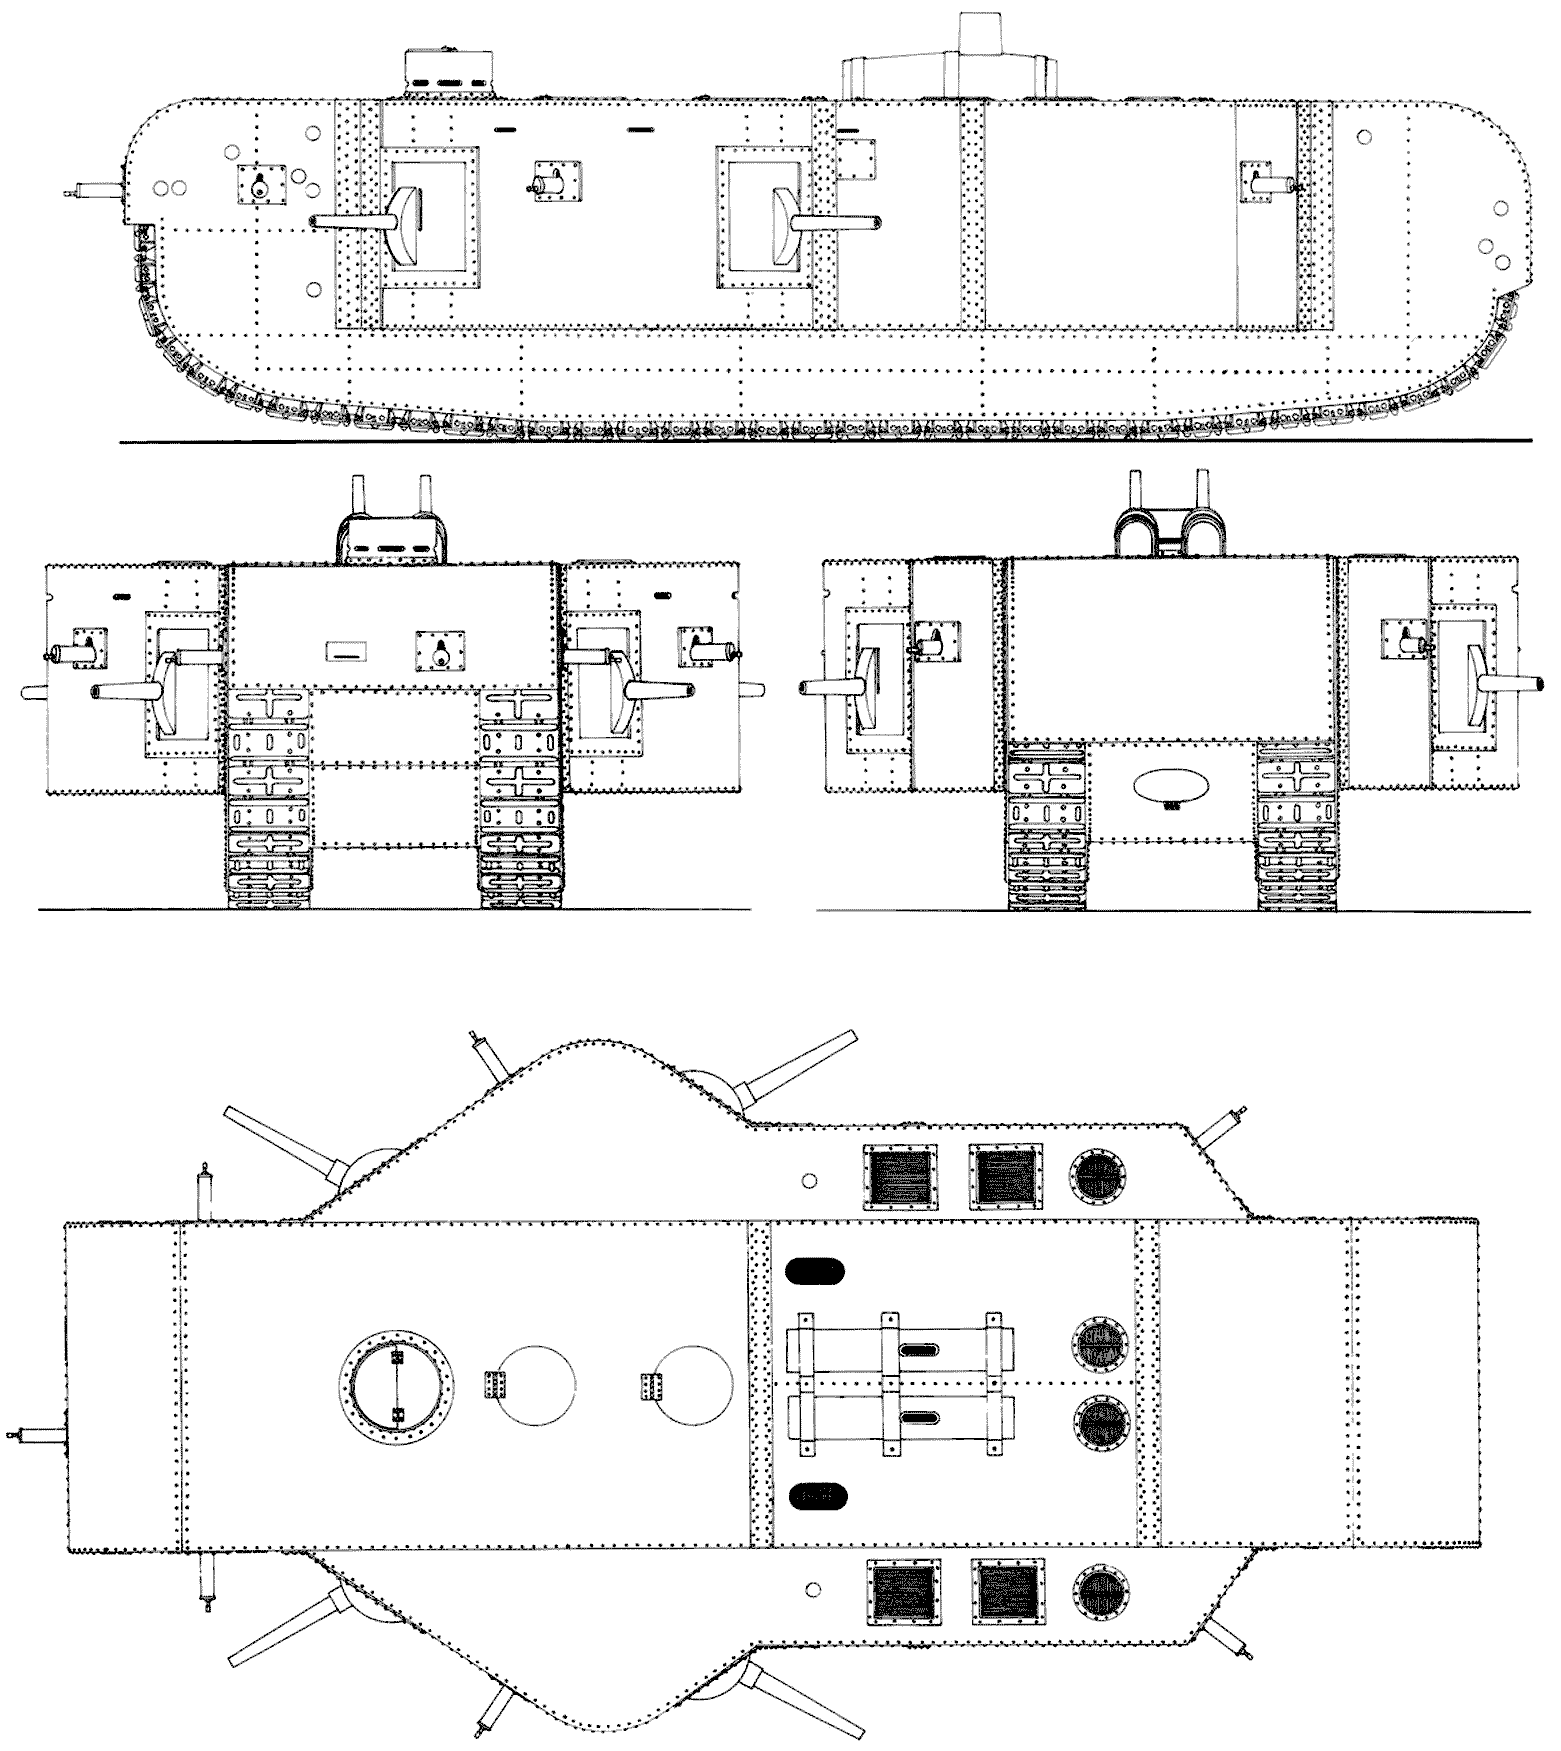 K-Wagen blueprint